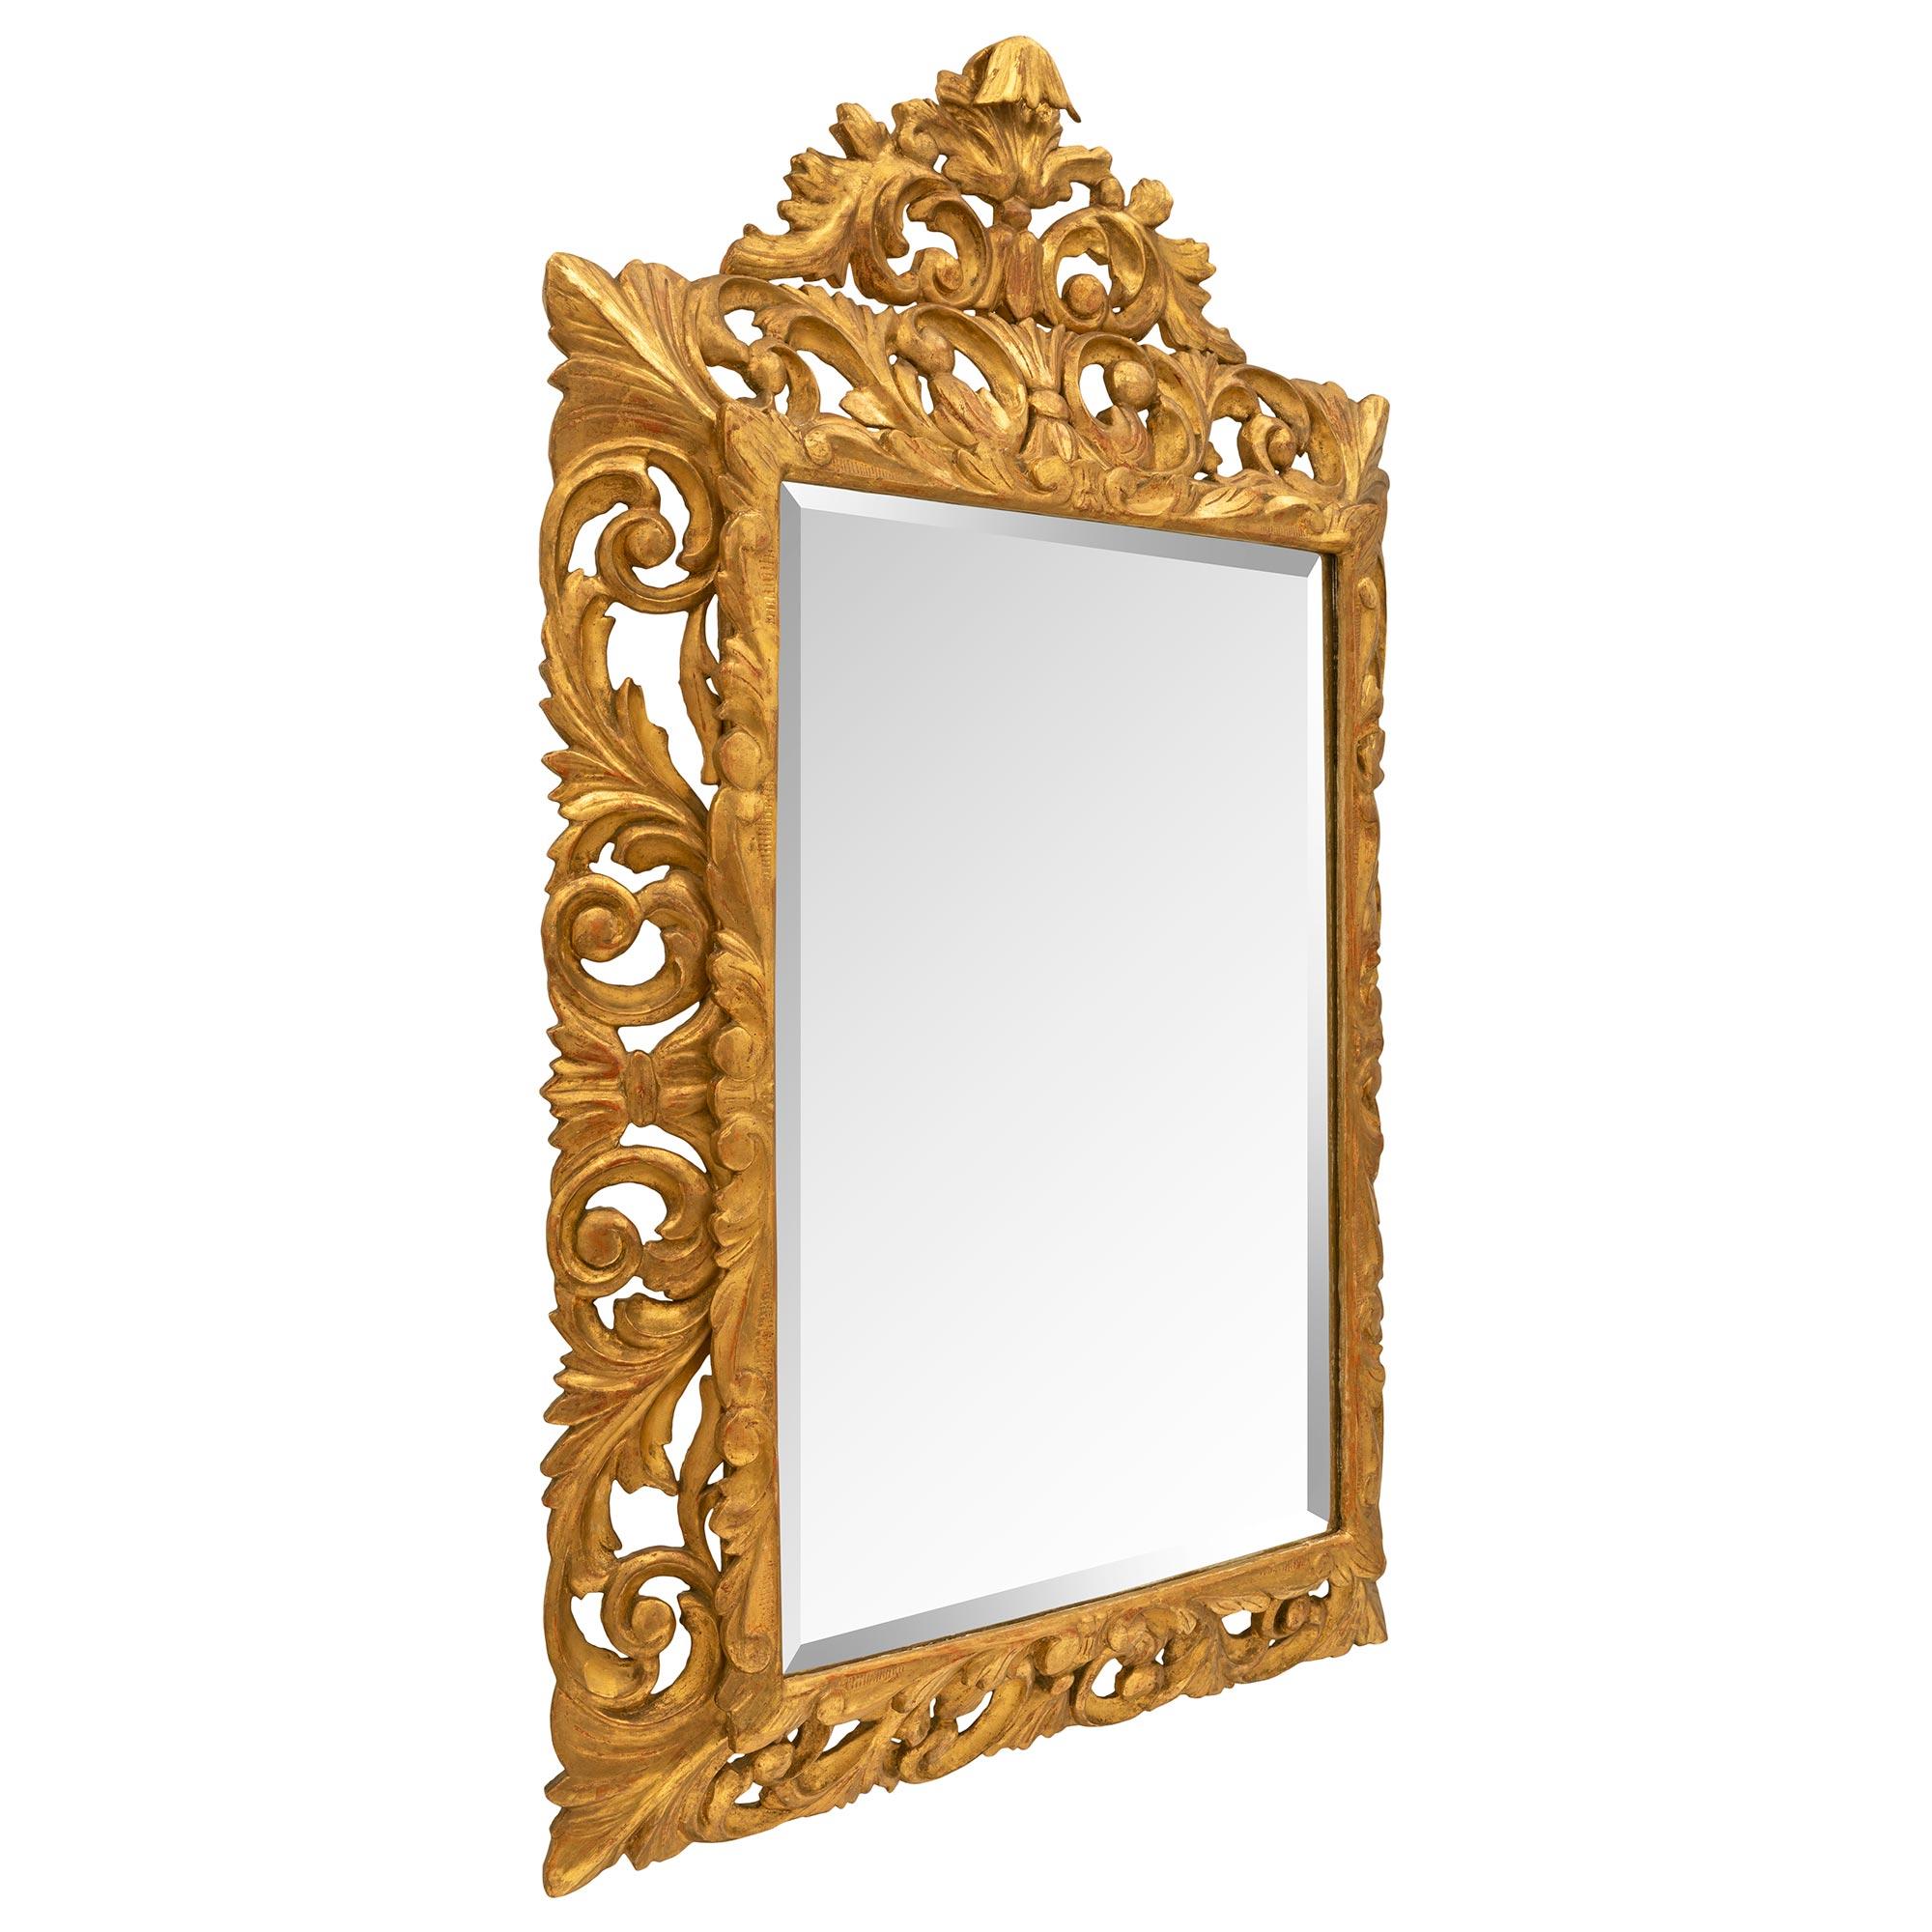 Un beau miroir baroque italien du 19ème siècle en bois doré. Le miroir conserve sa plaque biseautée d'origine, enchâssée dans une fine bordure mouchetée aux motifs gravés. Le cadre ajouré présente un ensemble impressionnant de motifs feuillagés